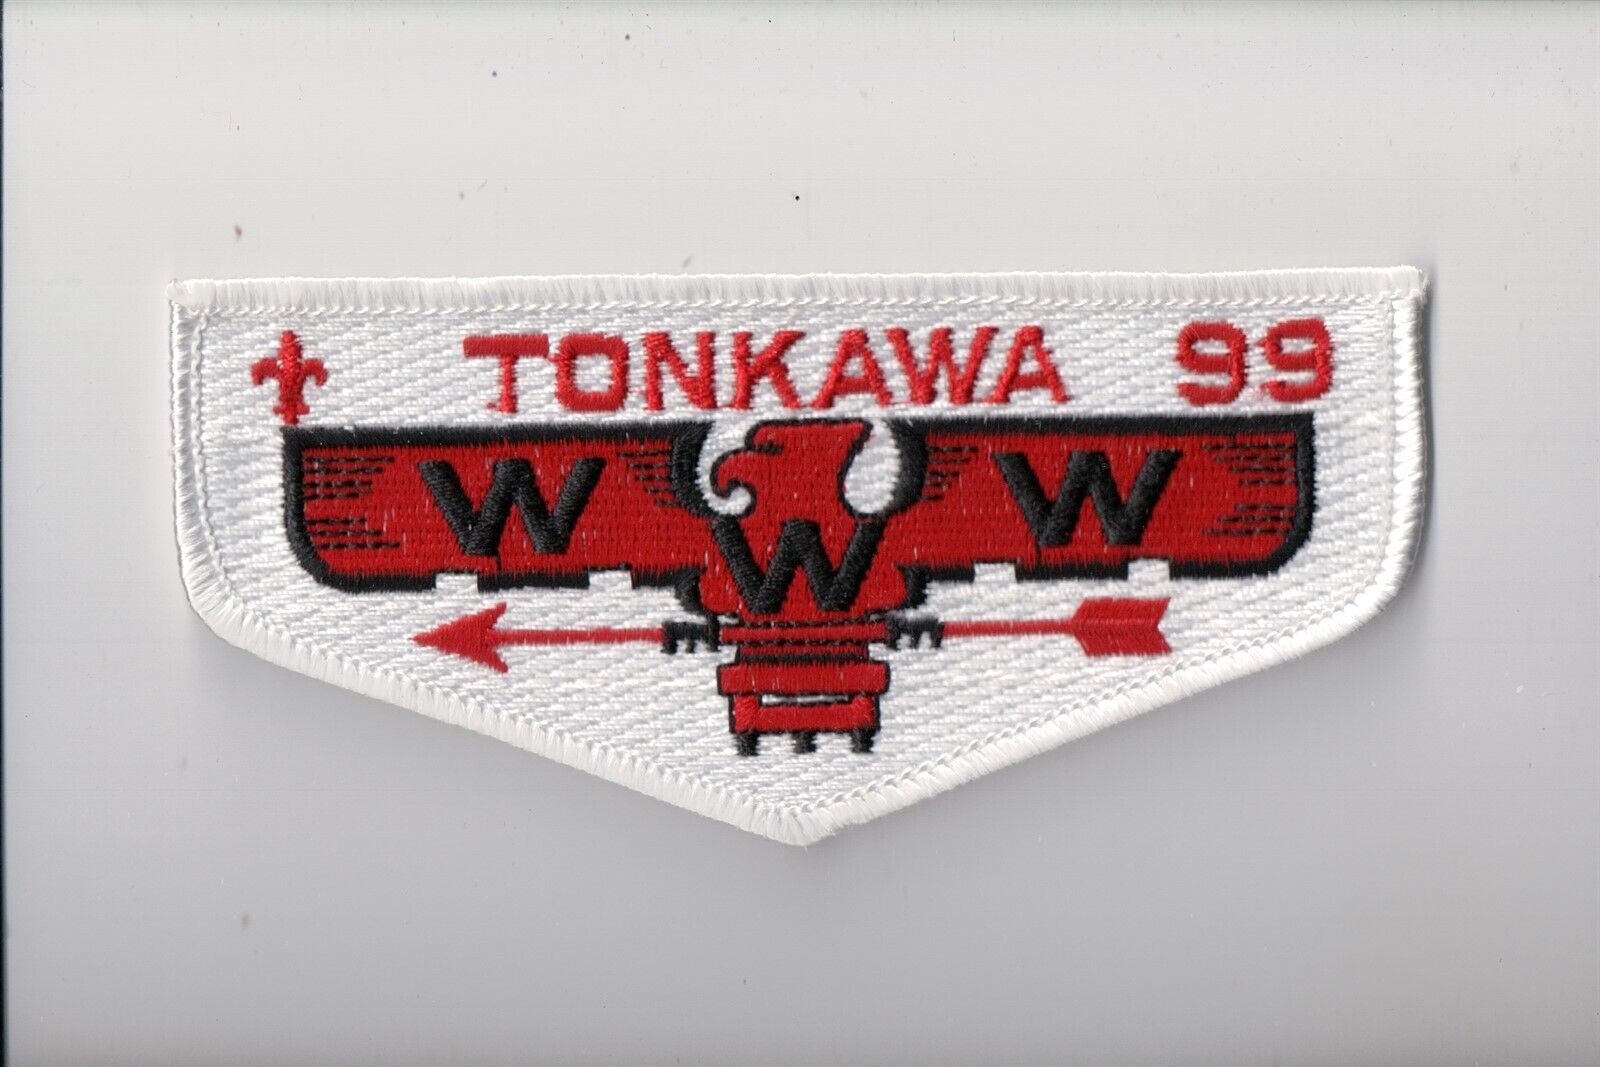 Lodge 99 Tonkawa S-18 OA flap (WW)